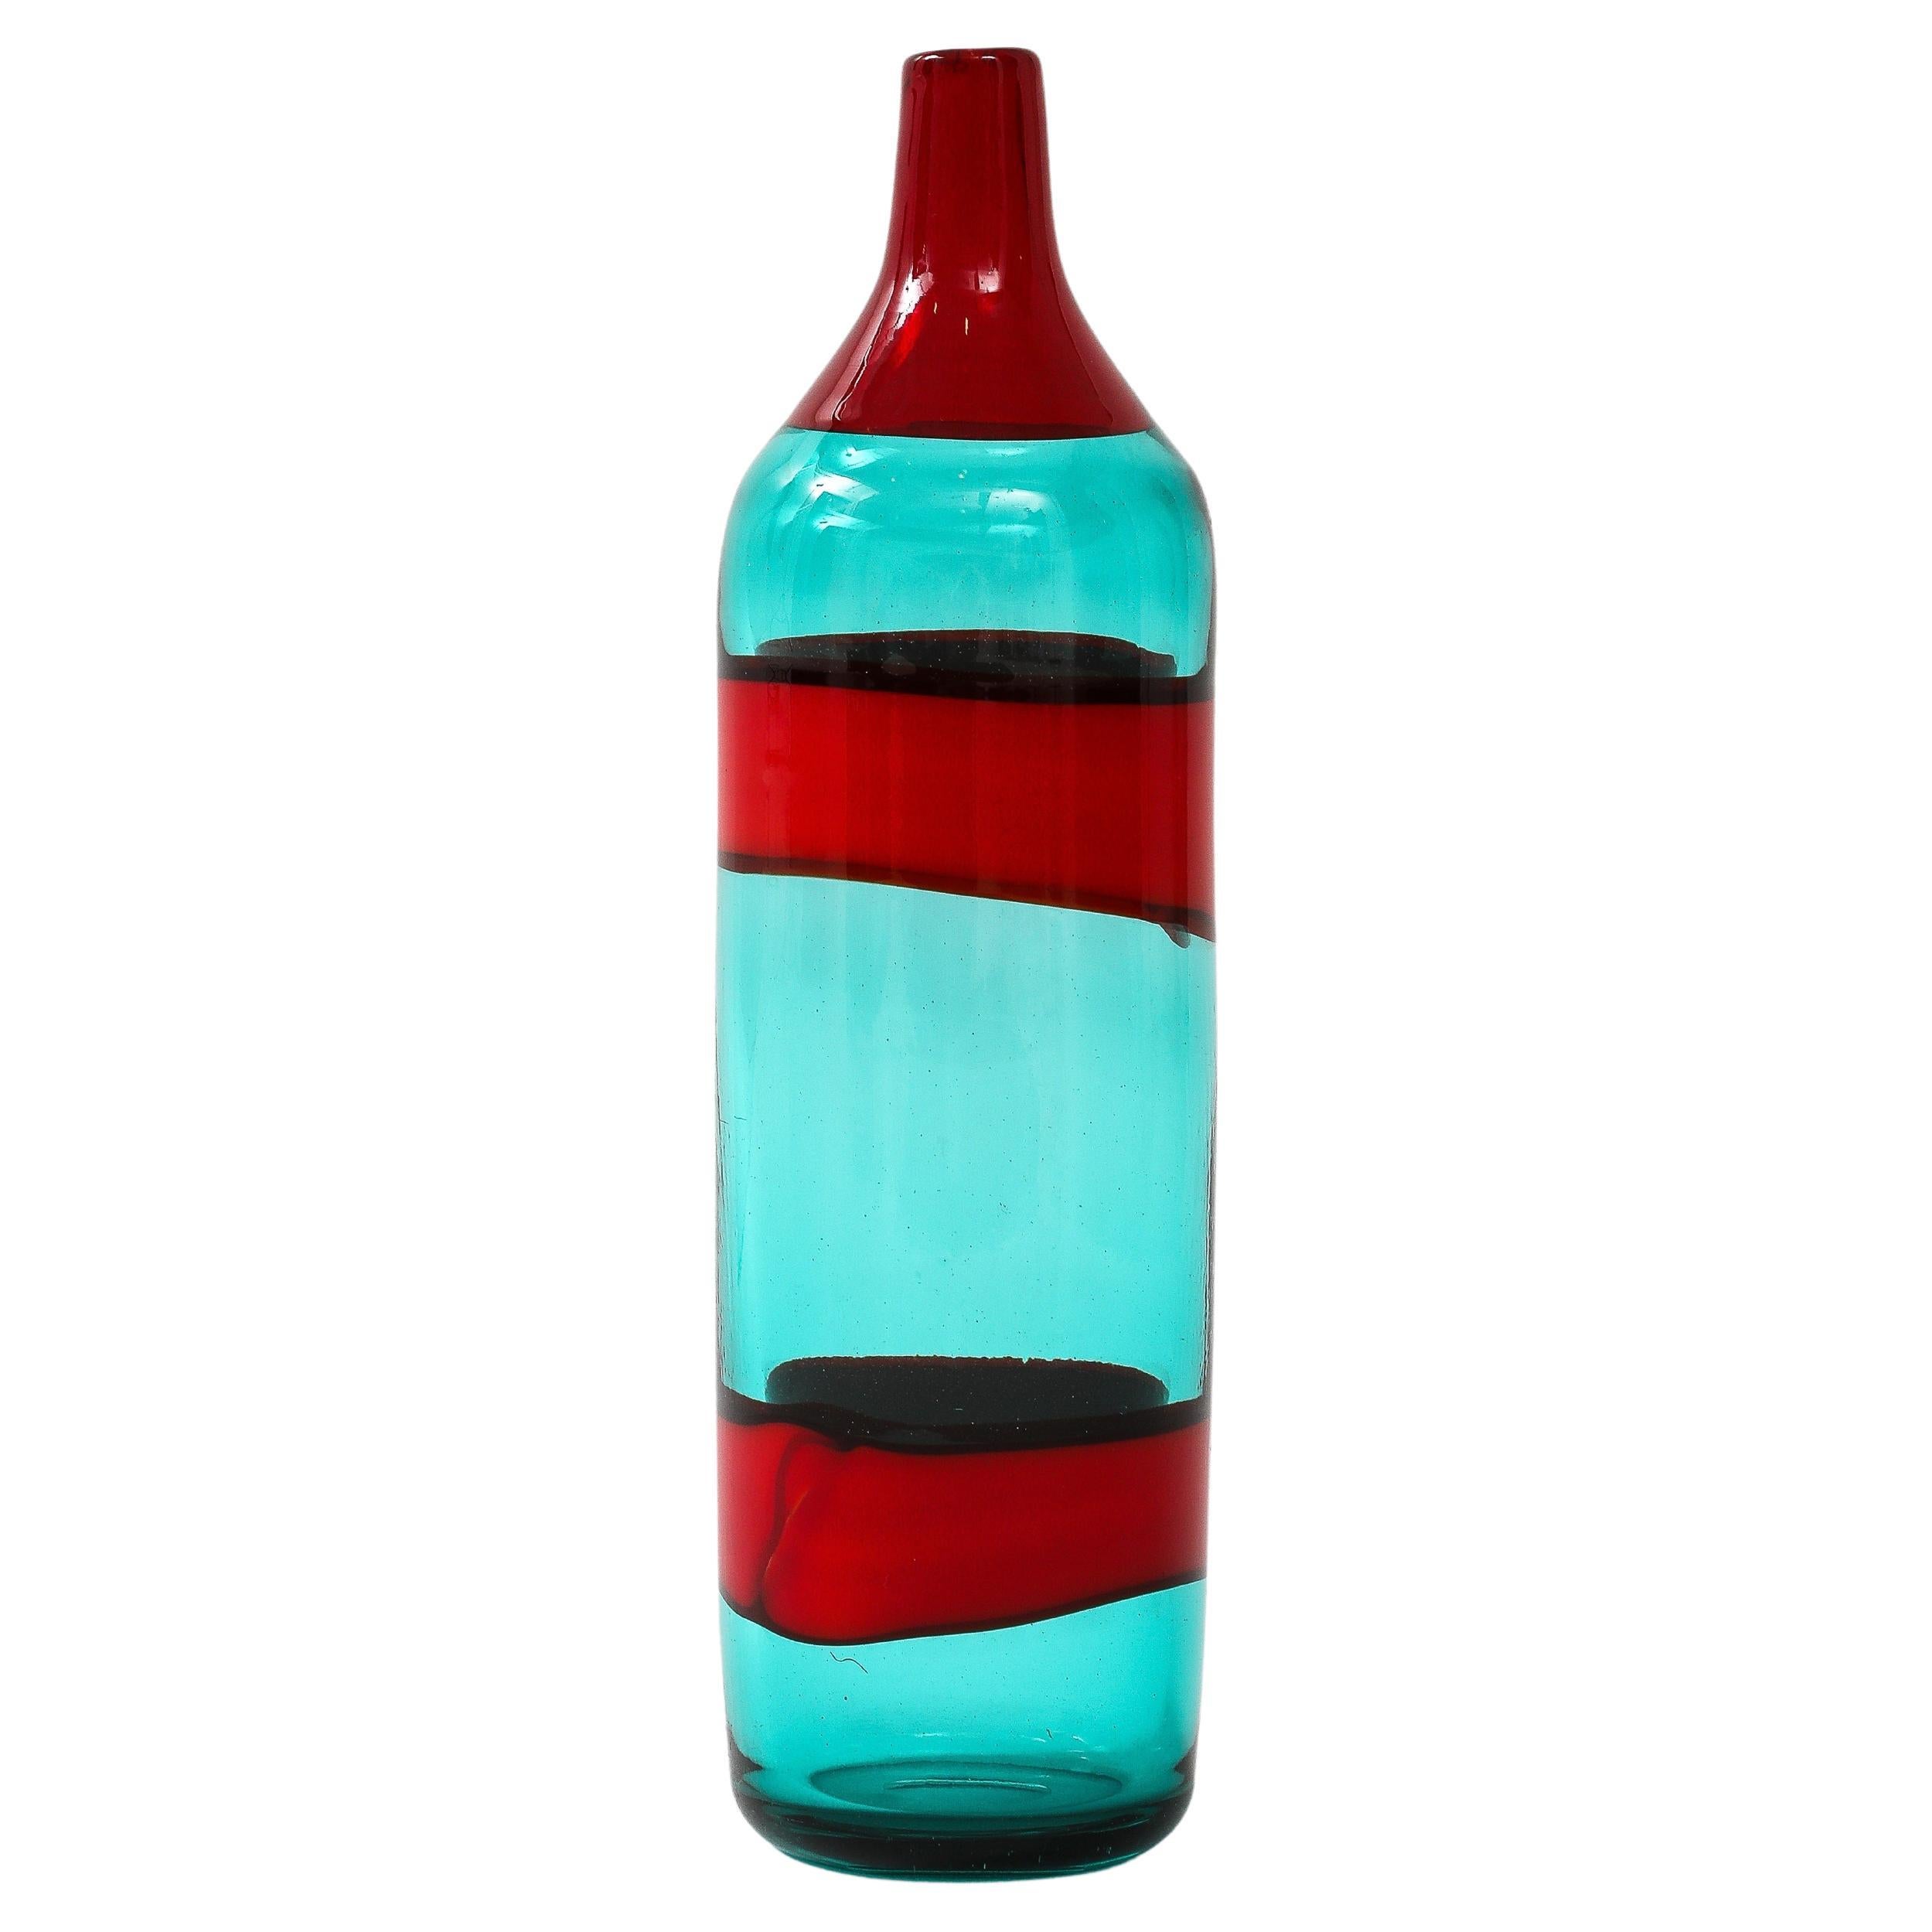 Fulvio Bianconi für Venini Fasce Orizzontali Flasche Modell 4315 Grün Rot Glas 